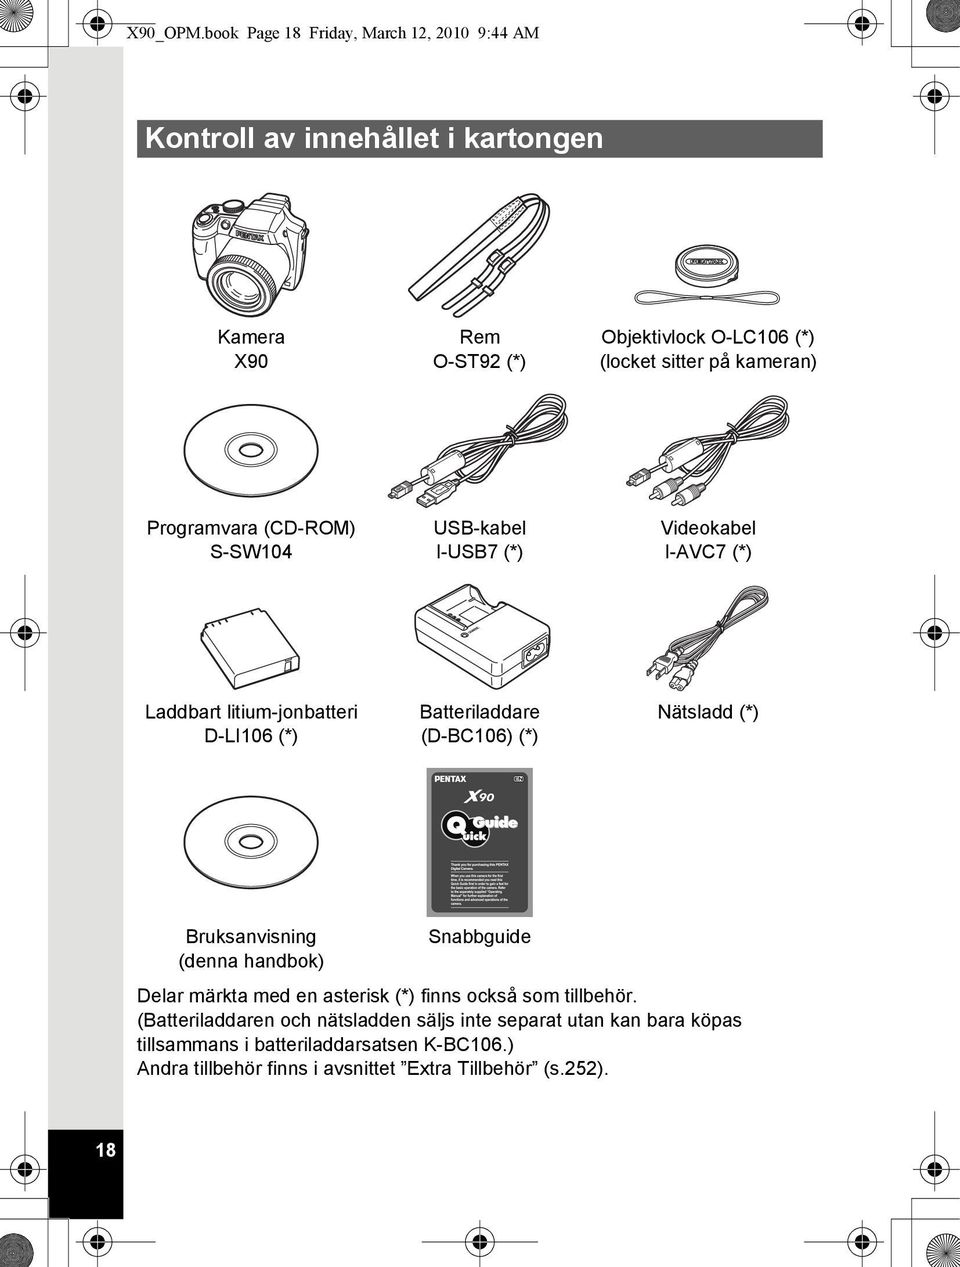 kameran) Programvara (CD-ROM) S-SW104 USB-kabel I-USB7 (*) Videokabel I-AVC7 (*) Laddbart litium-jonbatteri D-LI106 (*) Batteriladdare (D-BC106) (*)